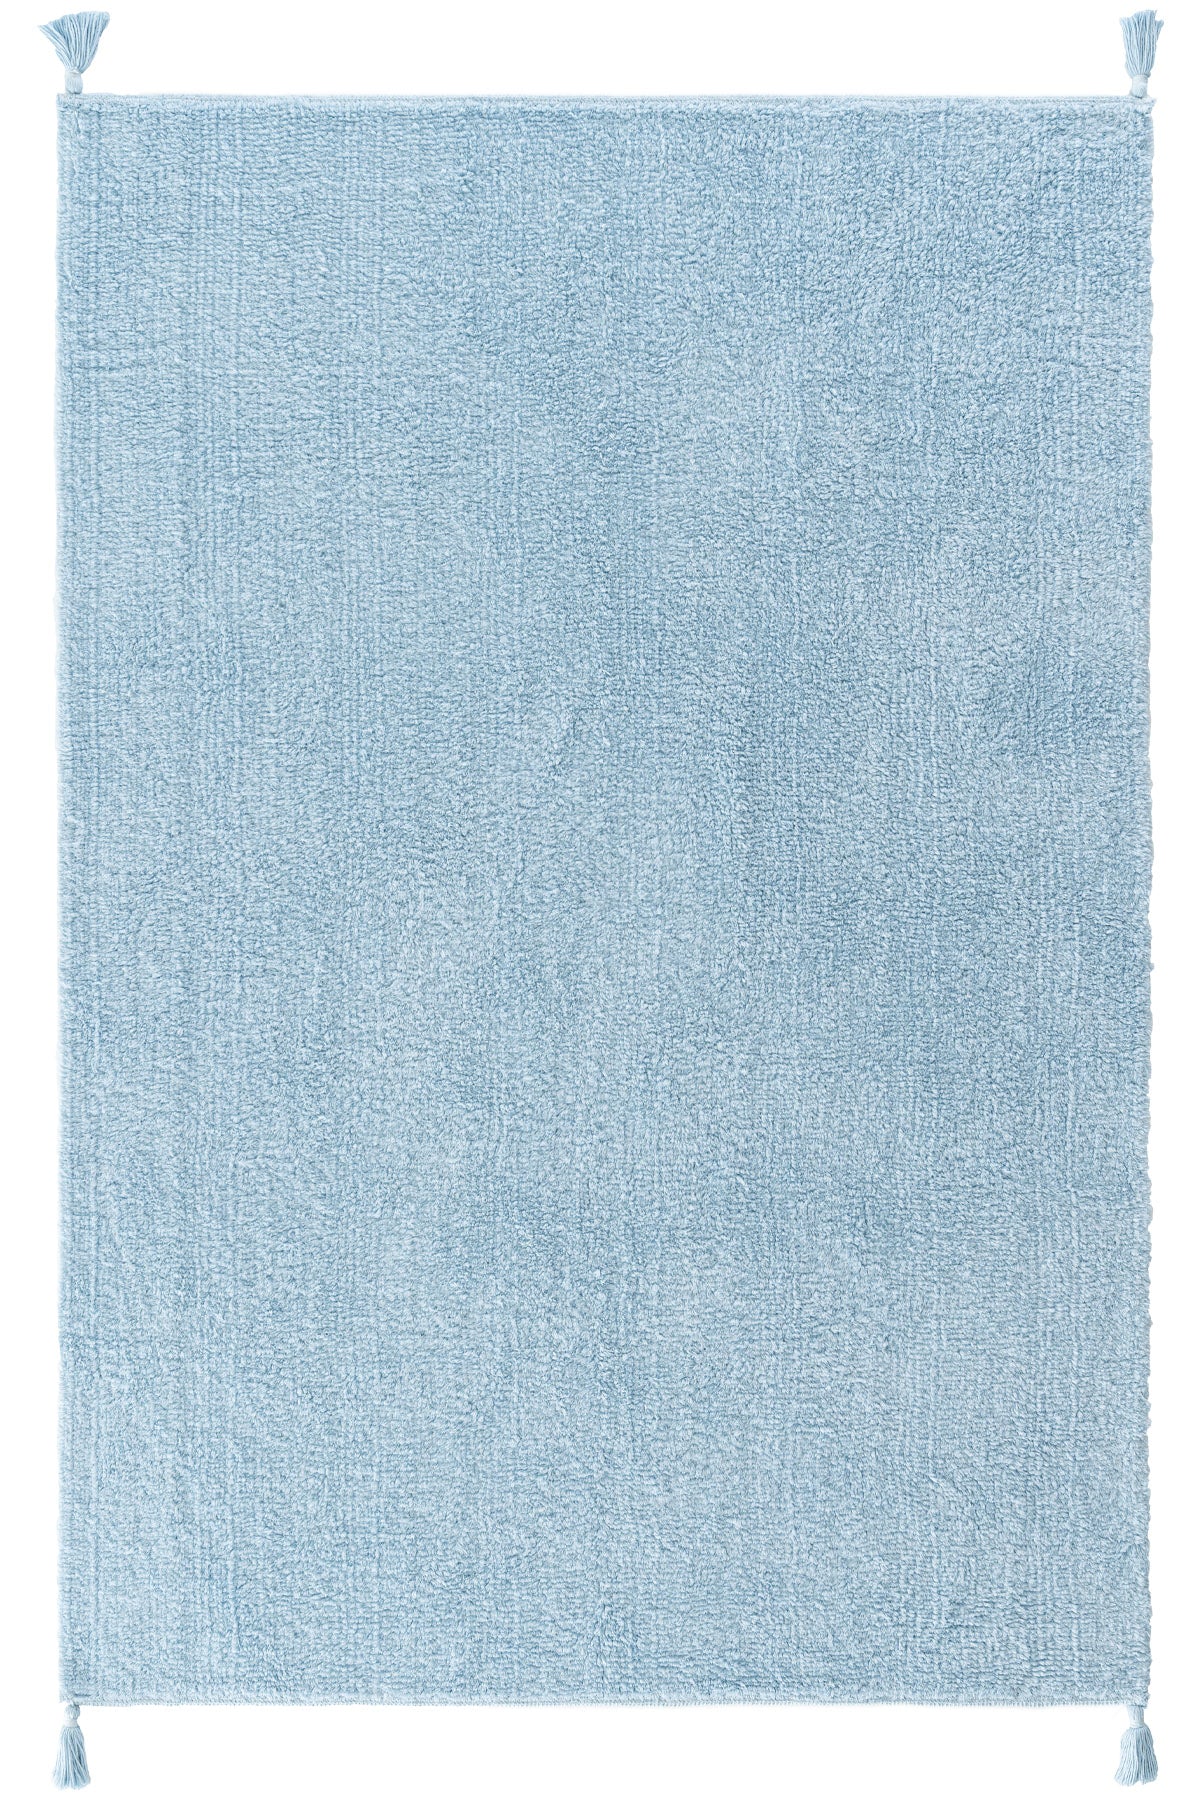 Cool Halı Cool Cotton CCN Plain Mavi Yumuşak Tuşeli Kolay Temizlenir Makinede Yıkanabilir Kaymaz Taban %100 Naturel Bebek Halısı